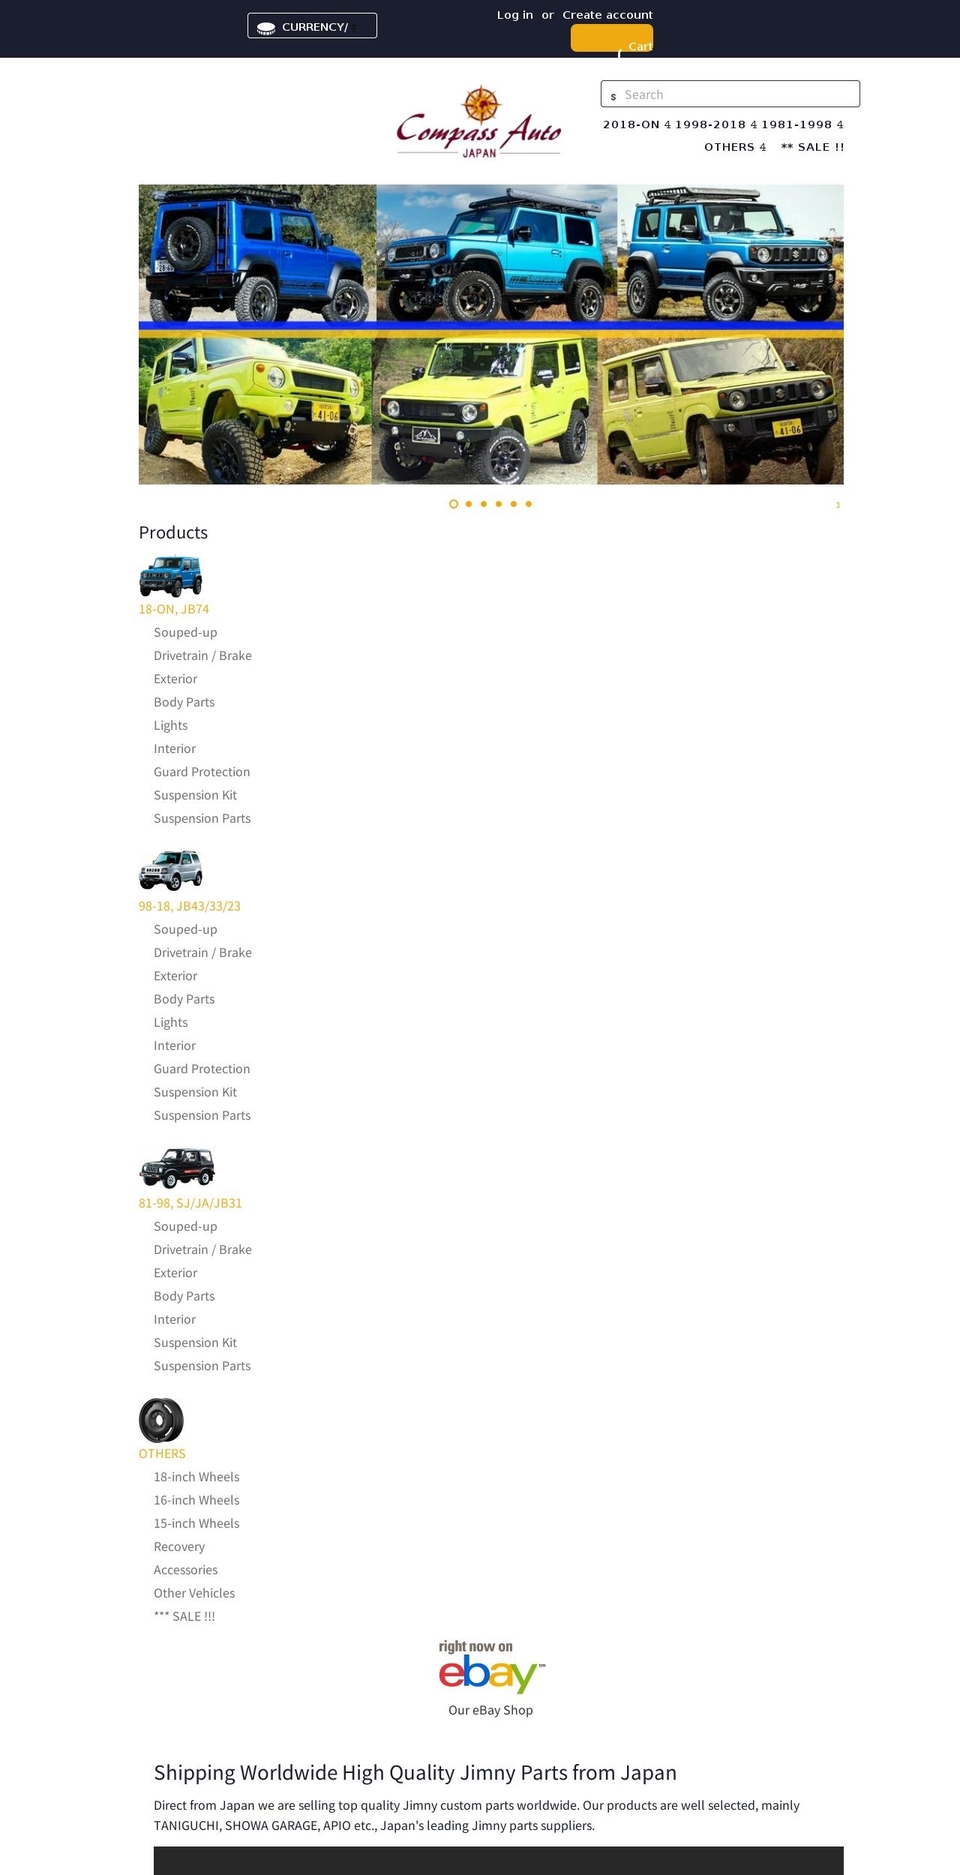 compassauto.jp shopify website screenshot